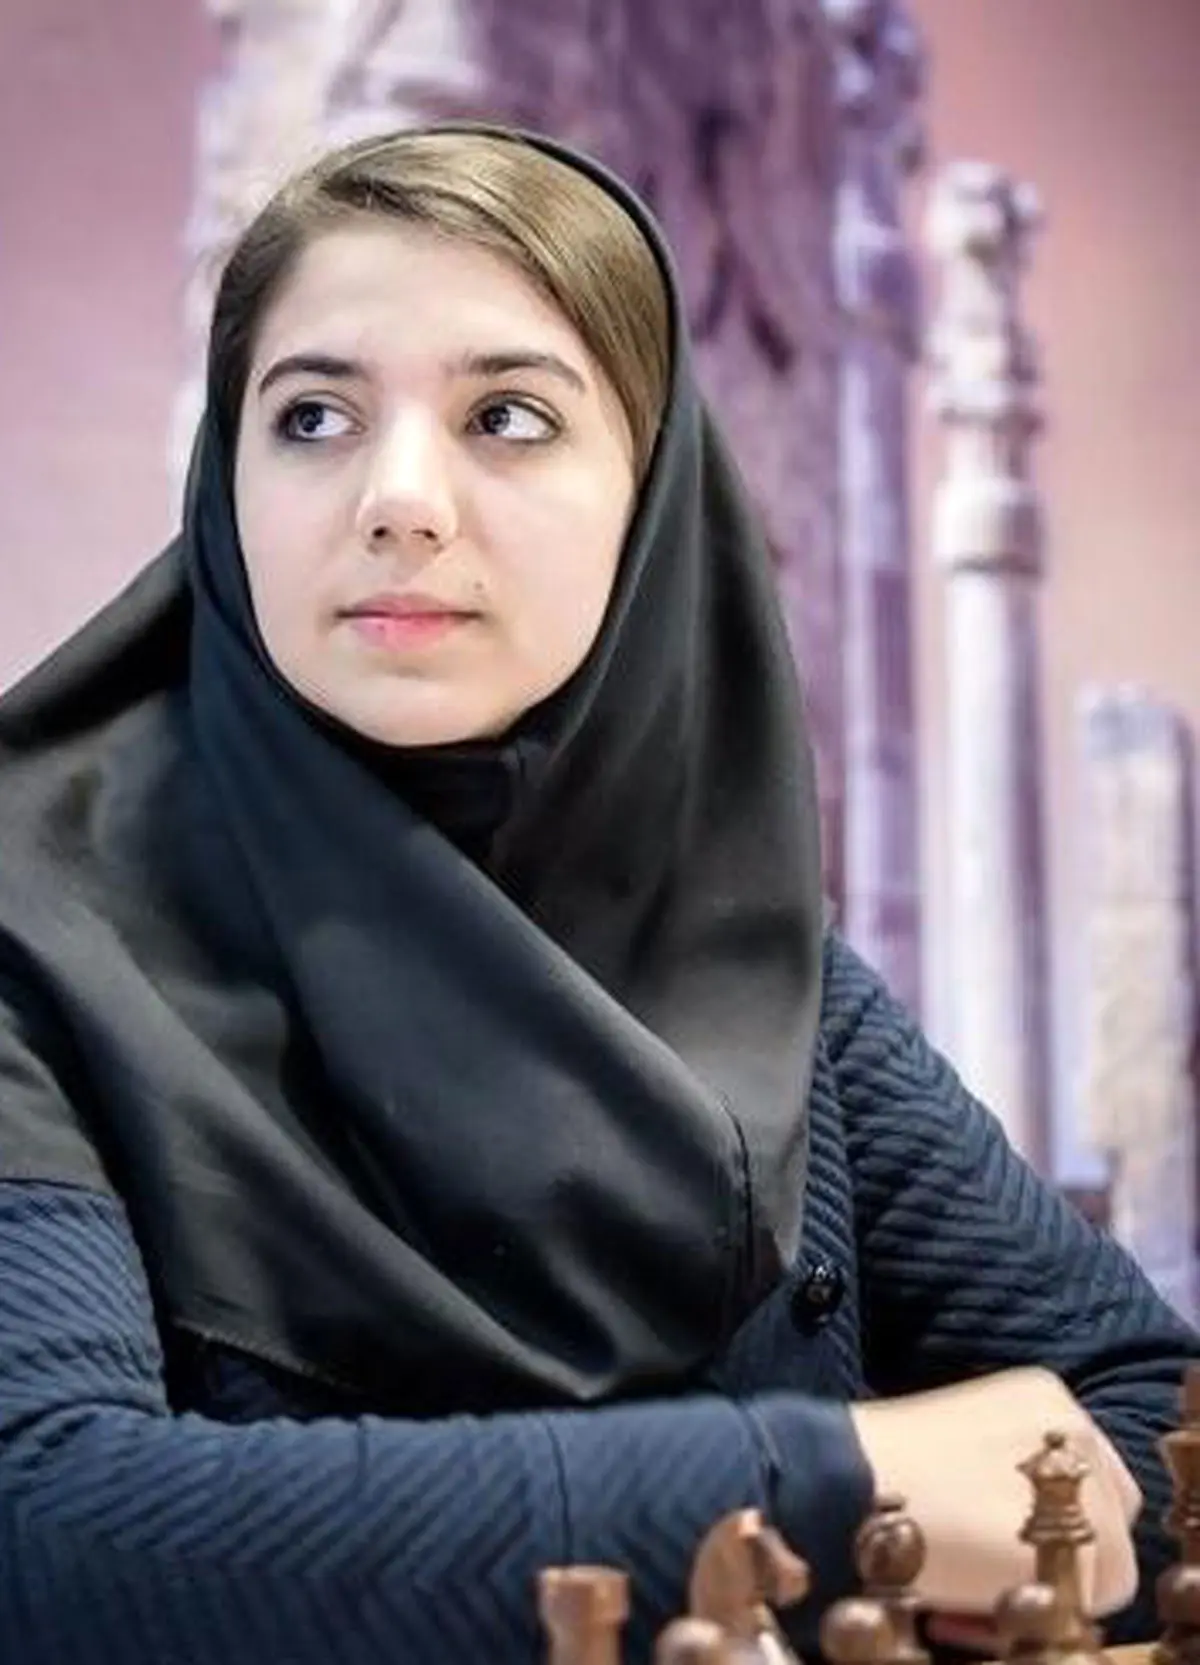 سقوط دختر ملی‌پوش ؛تفریح با همسر یا رقابت جهانی+عکس